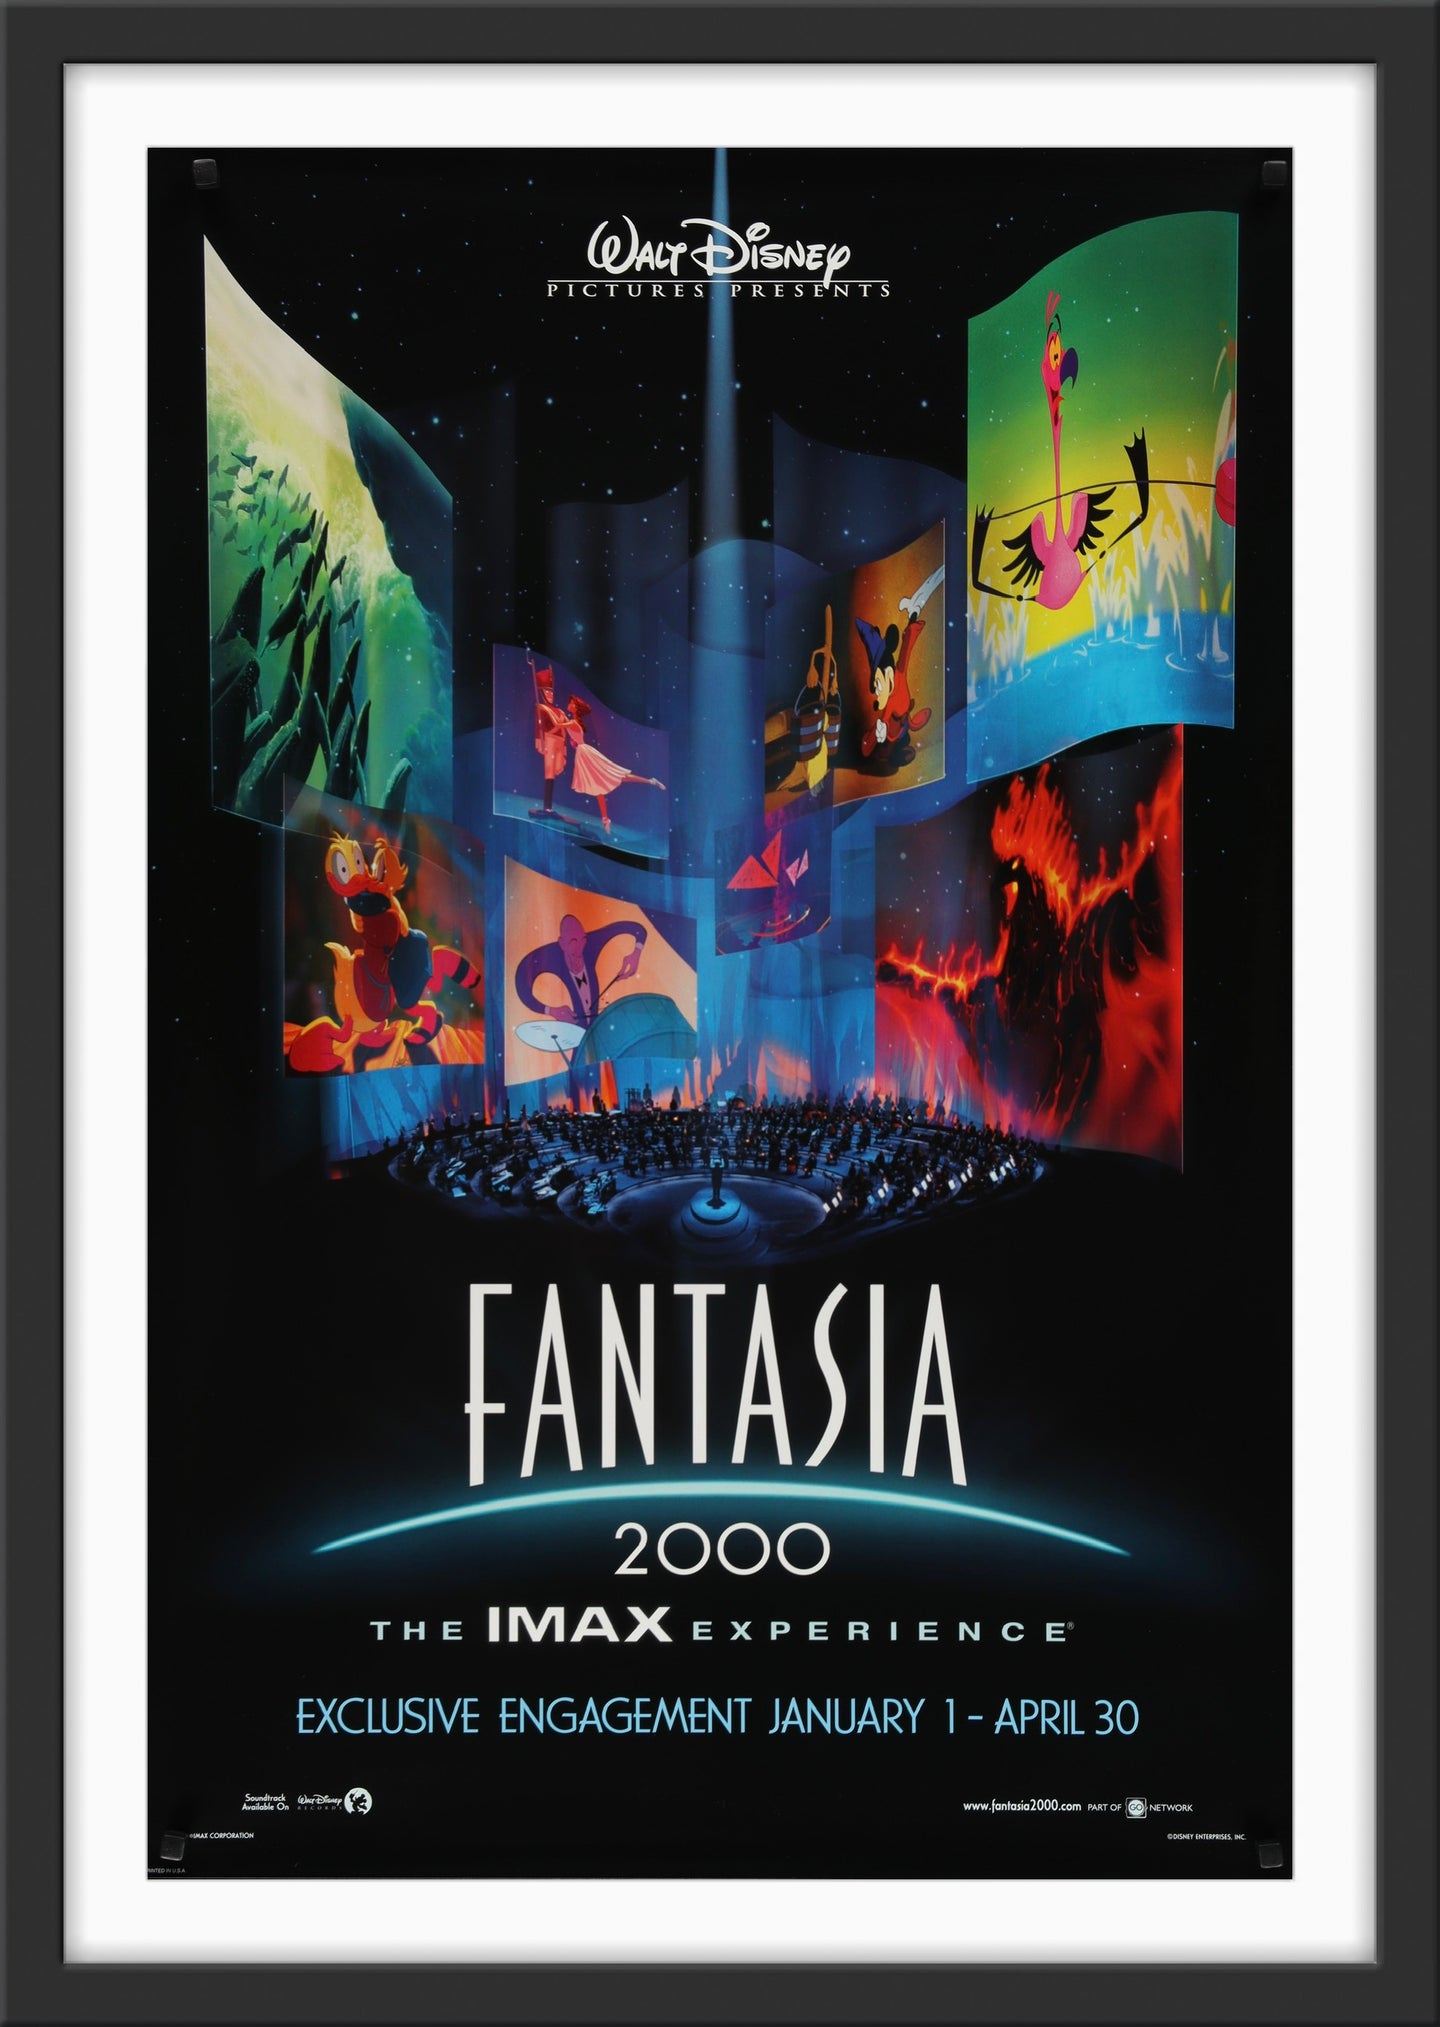 An original movie poster for the Disney film Fantasia 2000